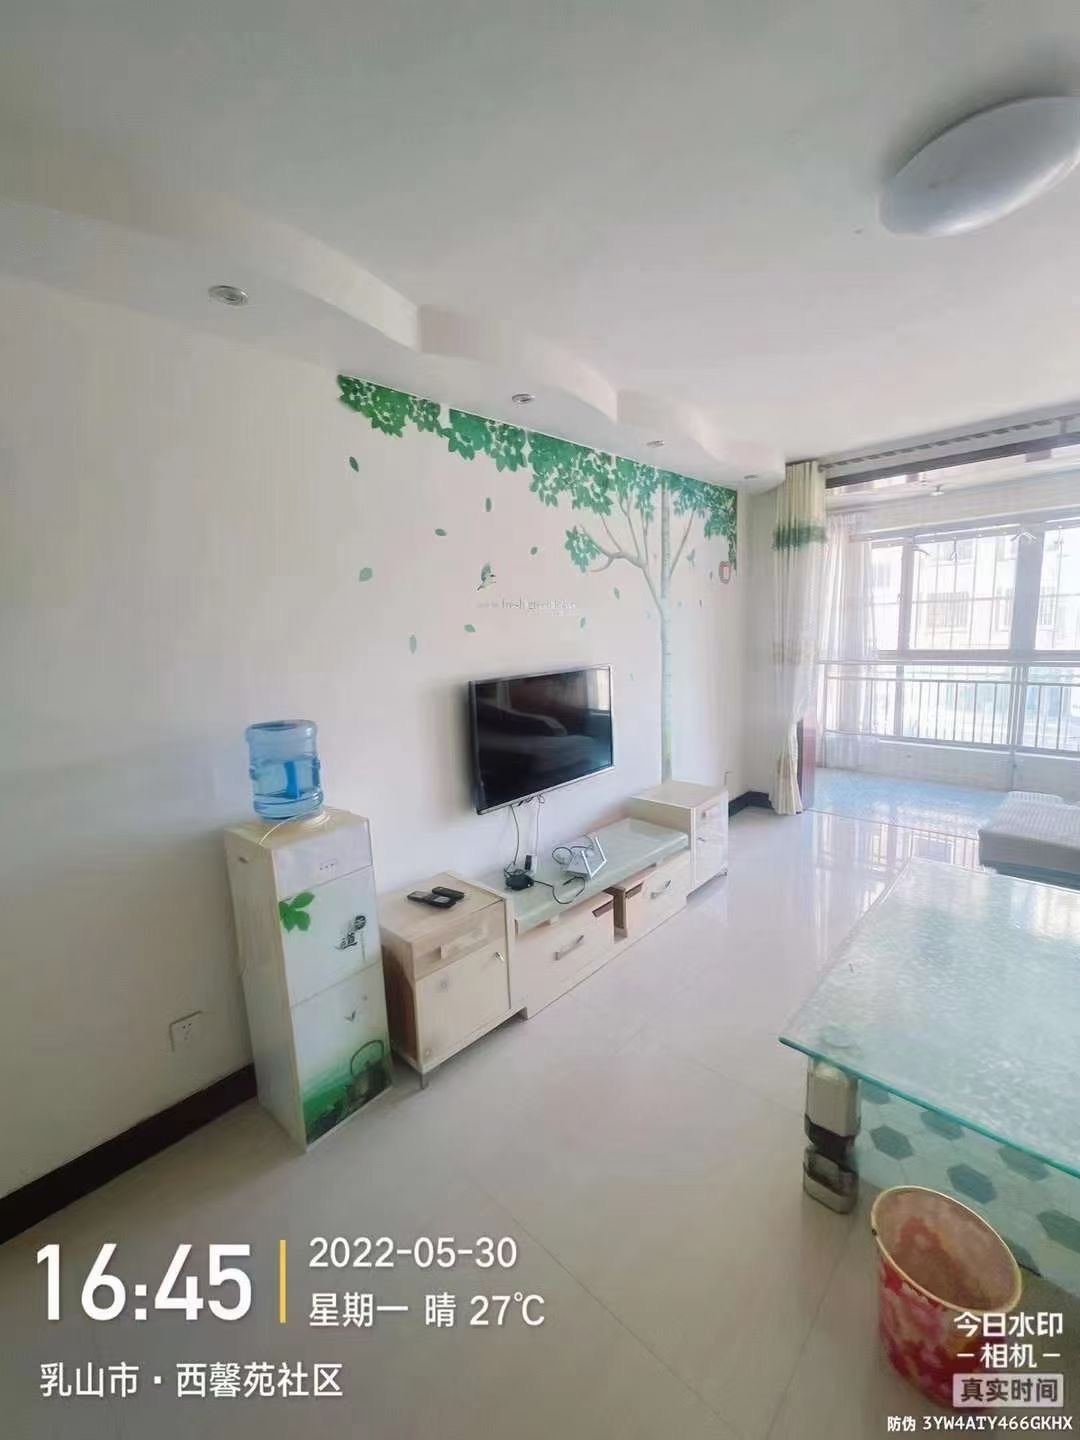 【出租】西馨苑二期1楼 精装修 两室90平 电视/冰箱/洗衣